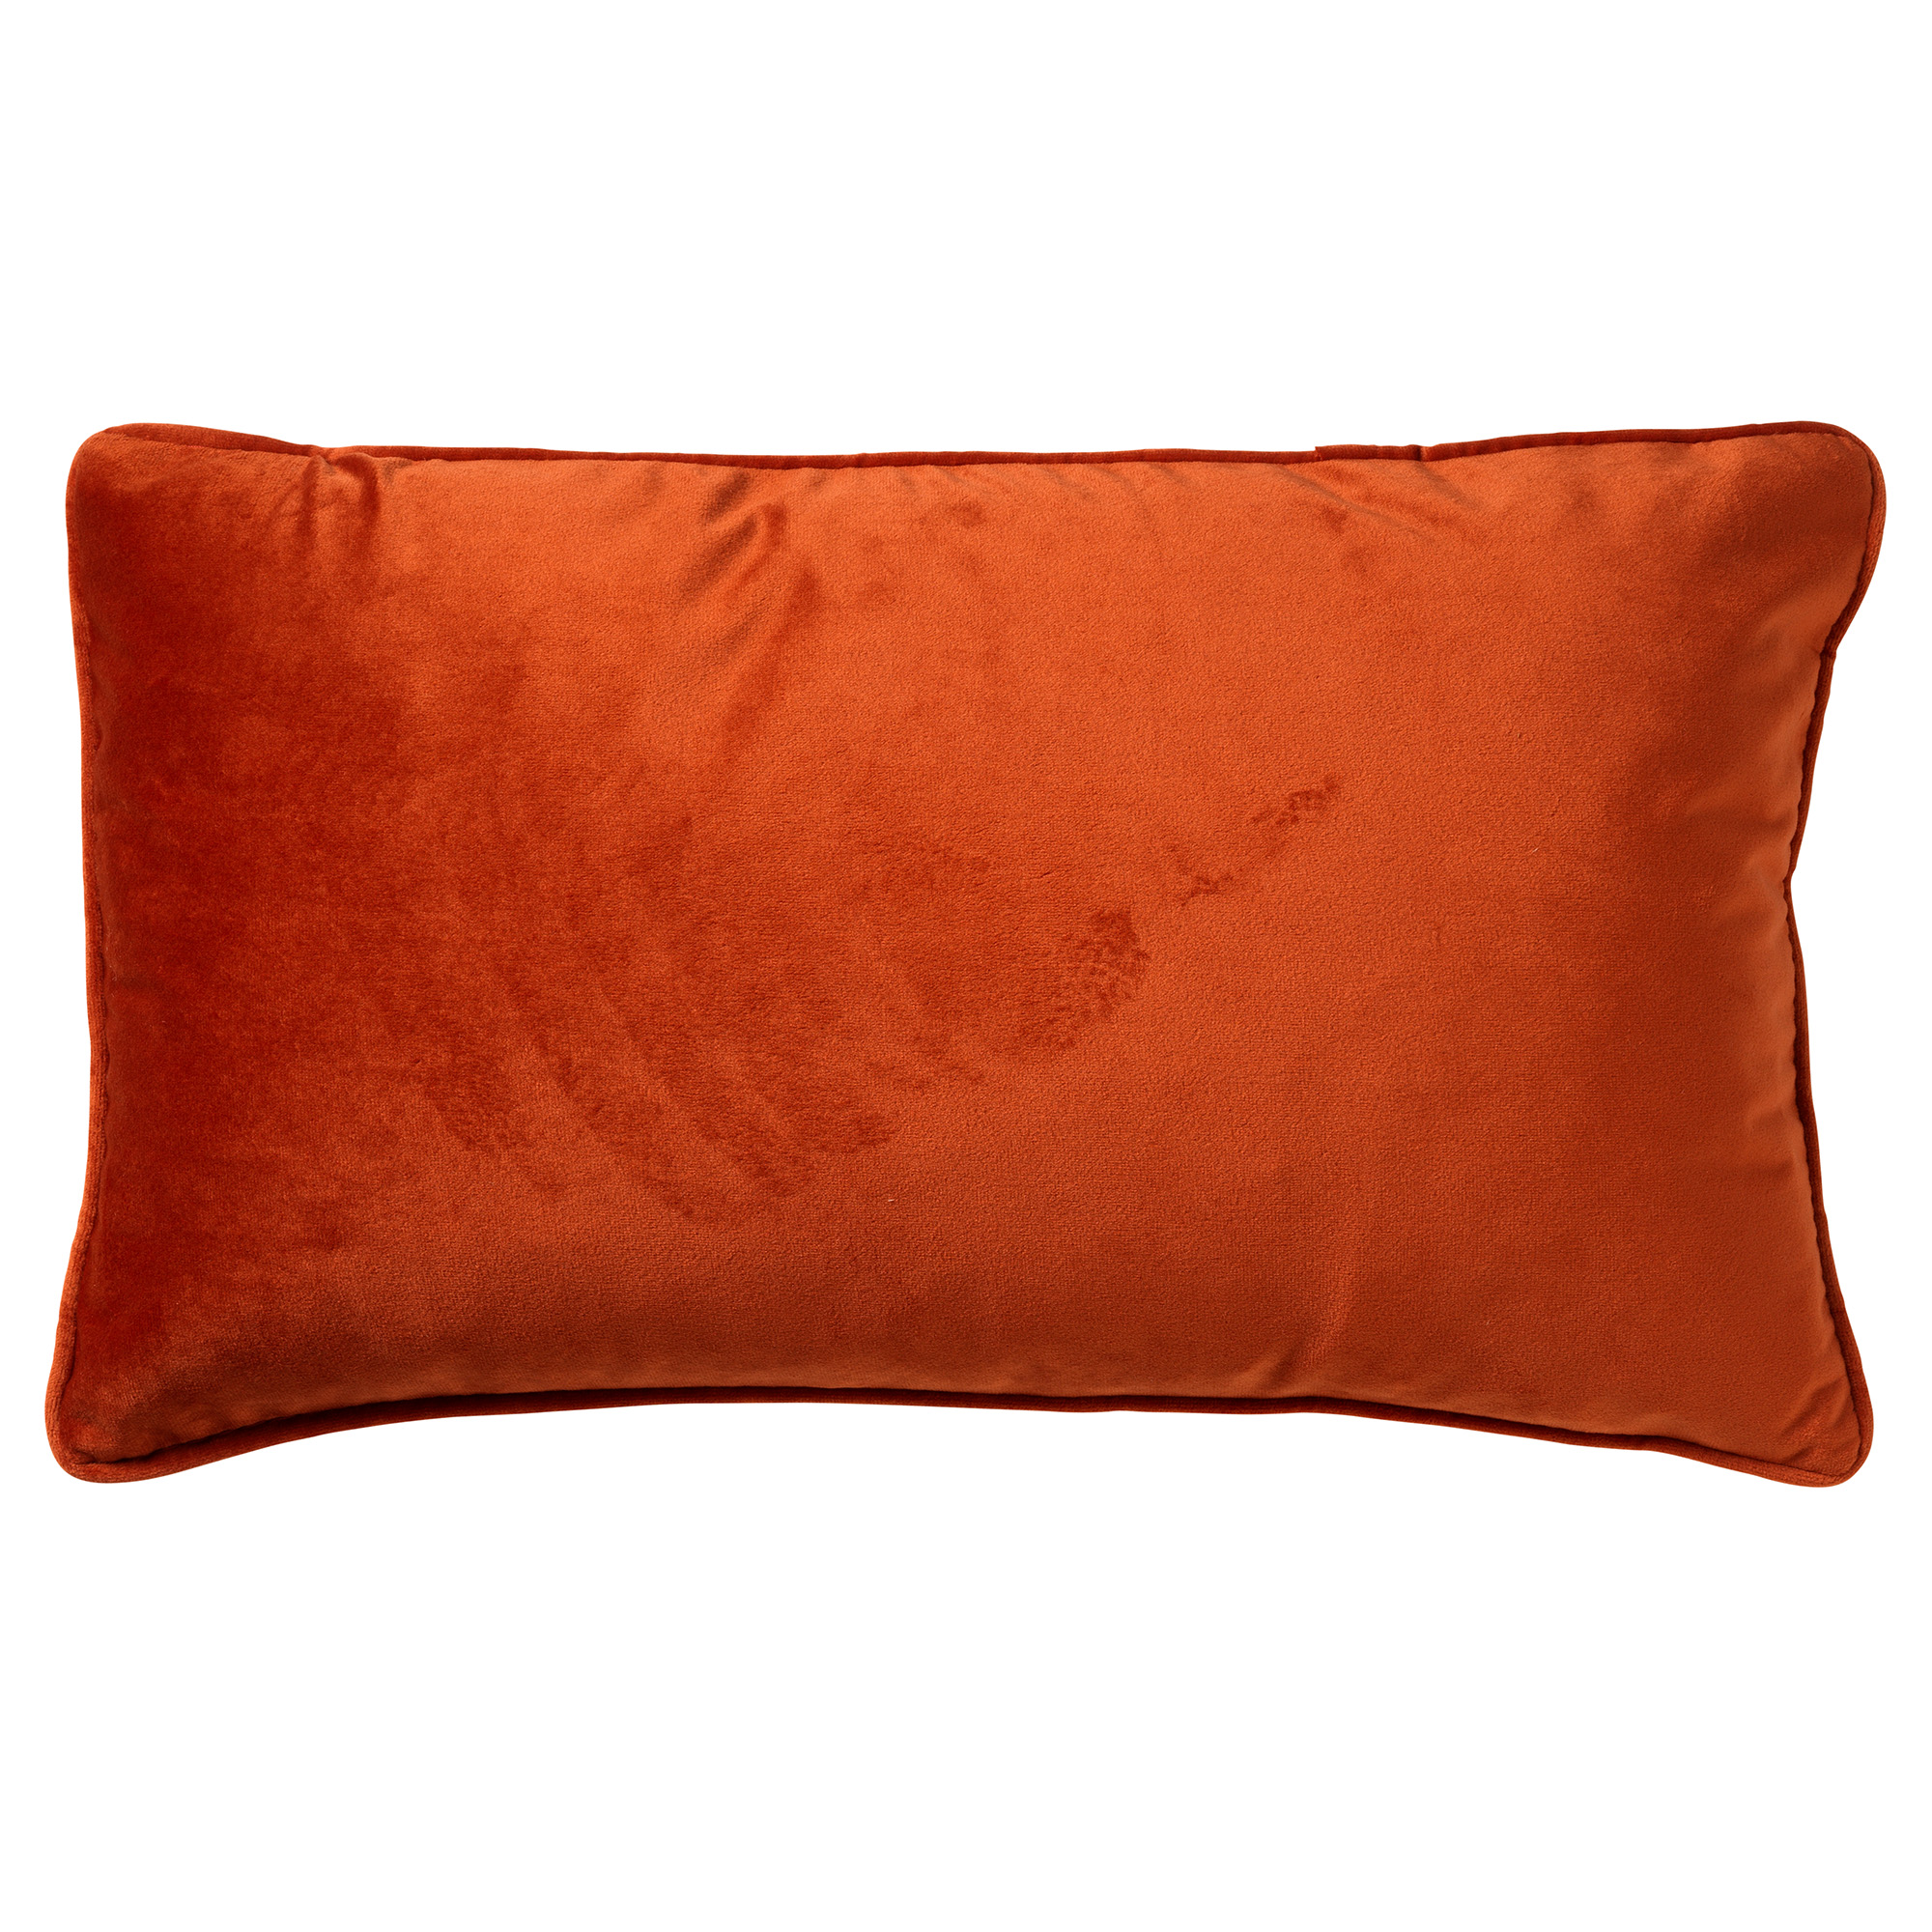 FINN - Cushion cover 30x50 cm Potters Clay - orange-terracotta